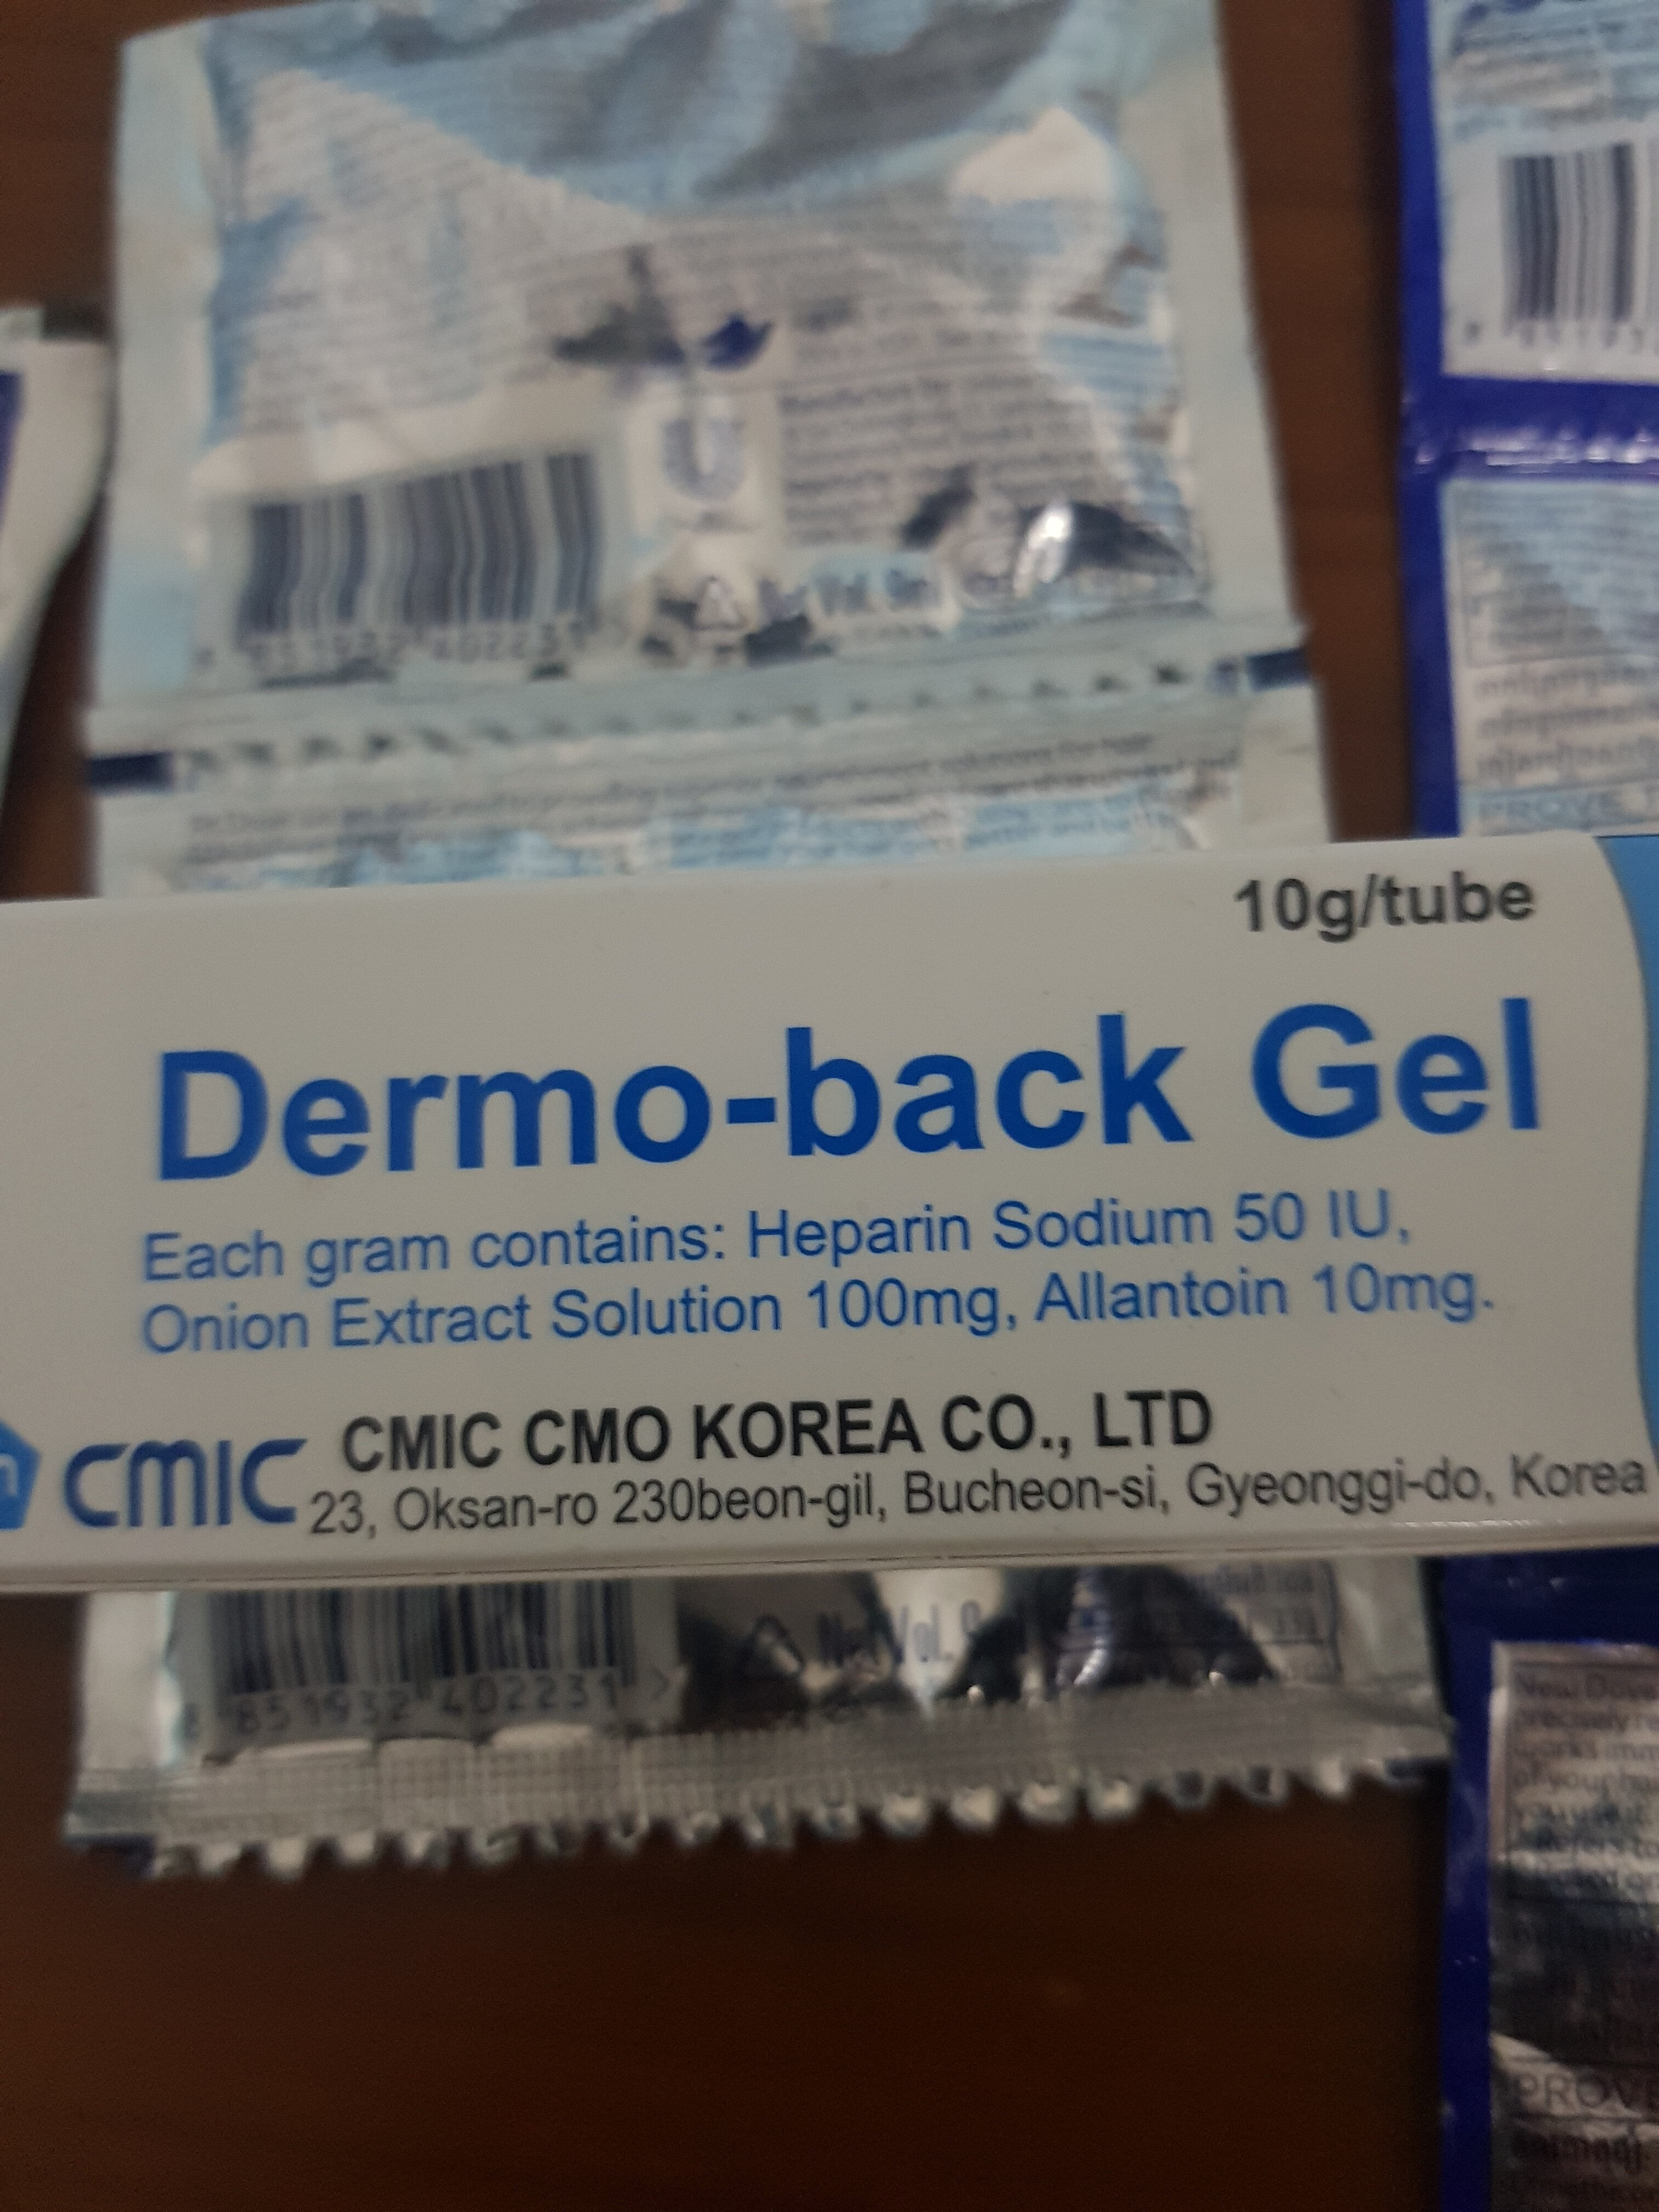 dermo-back gel - Produkt - en